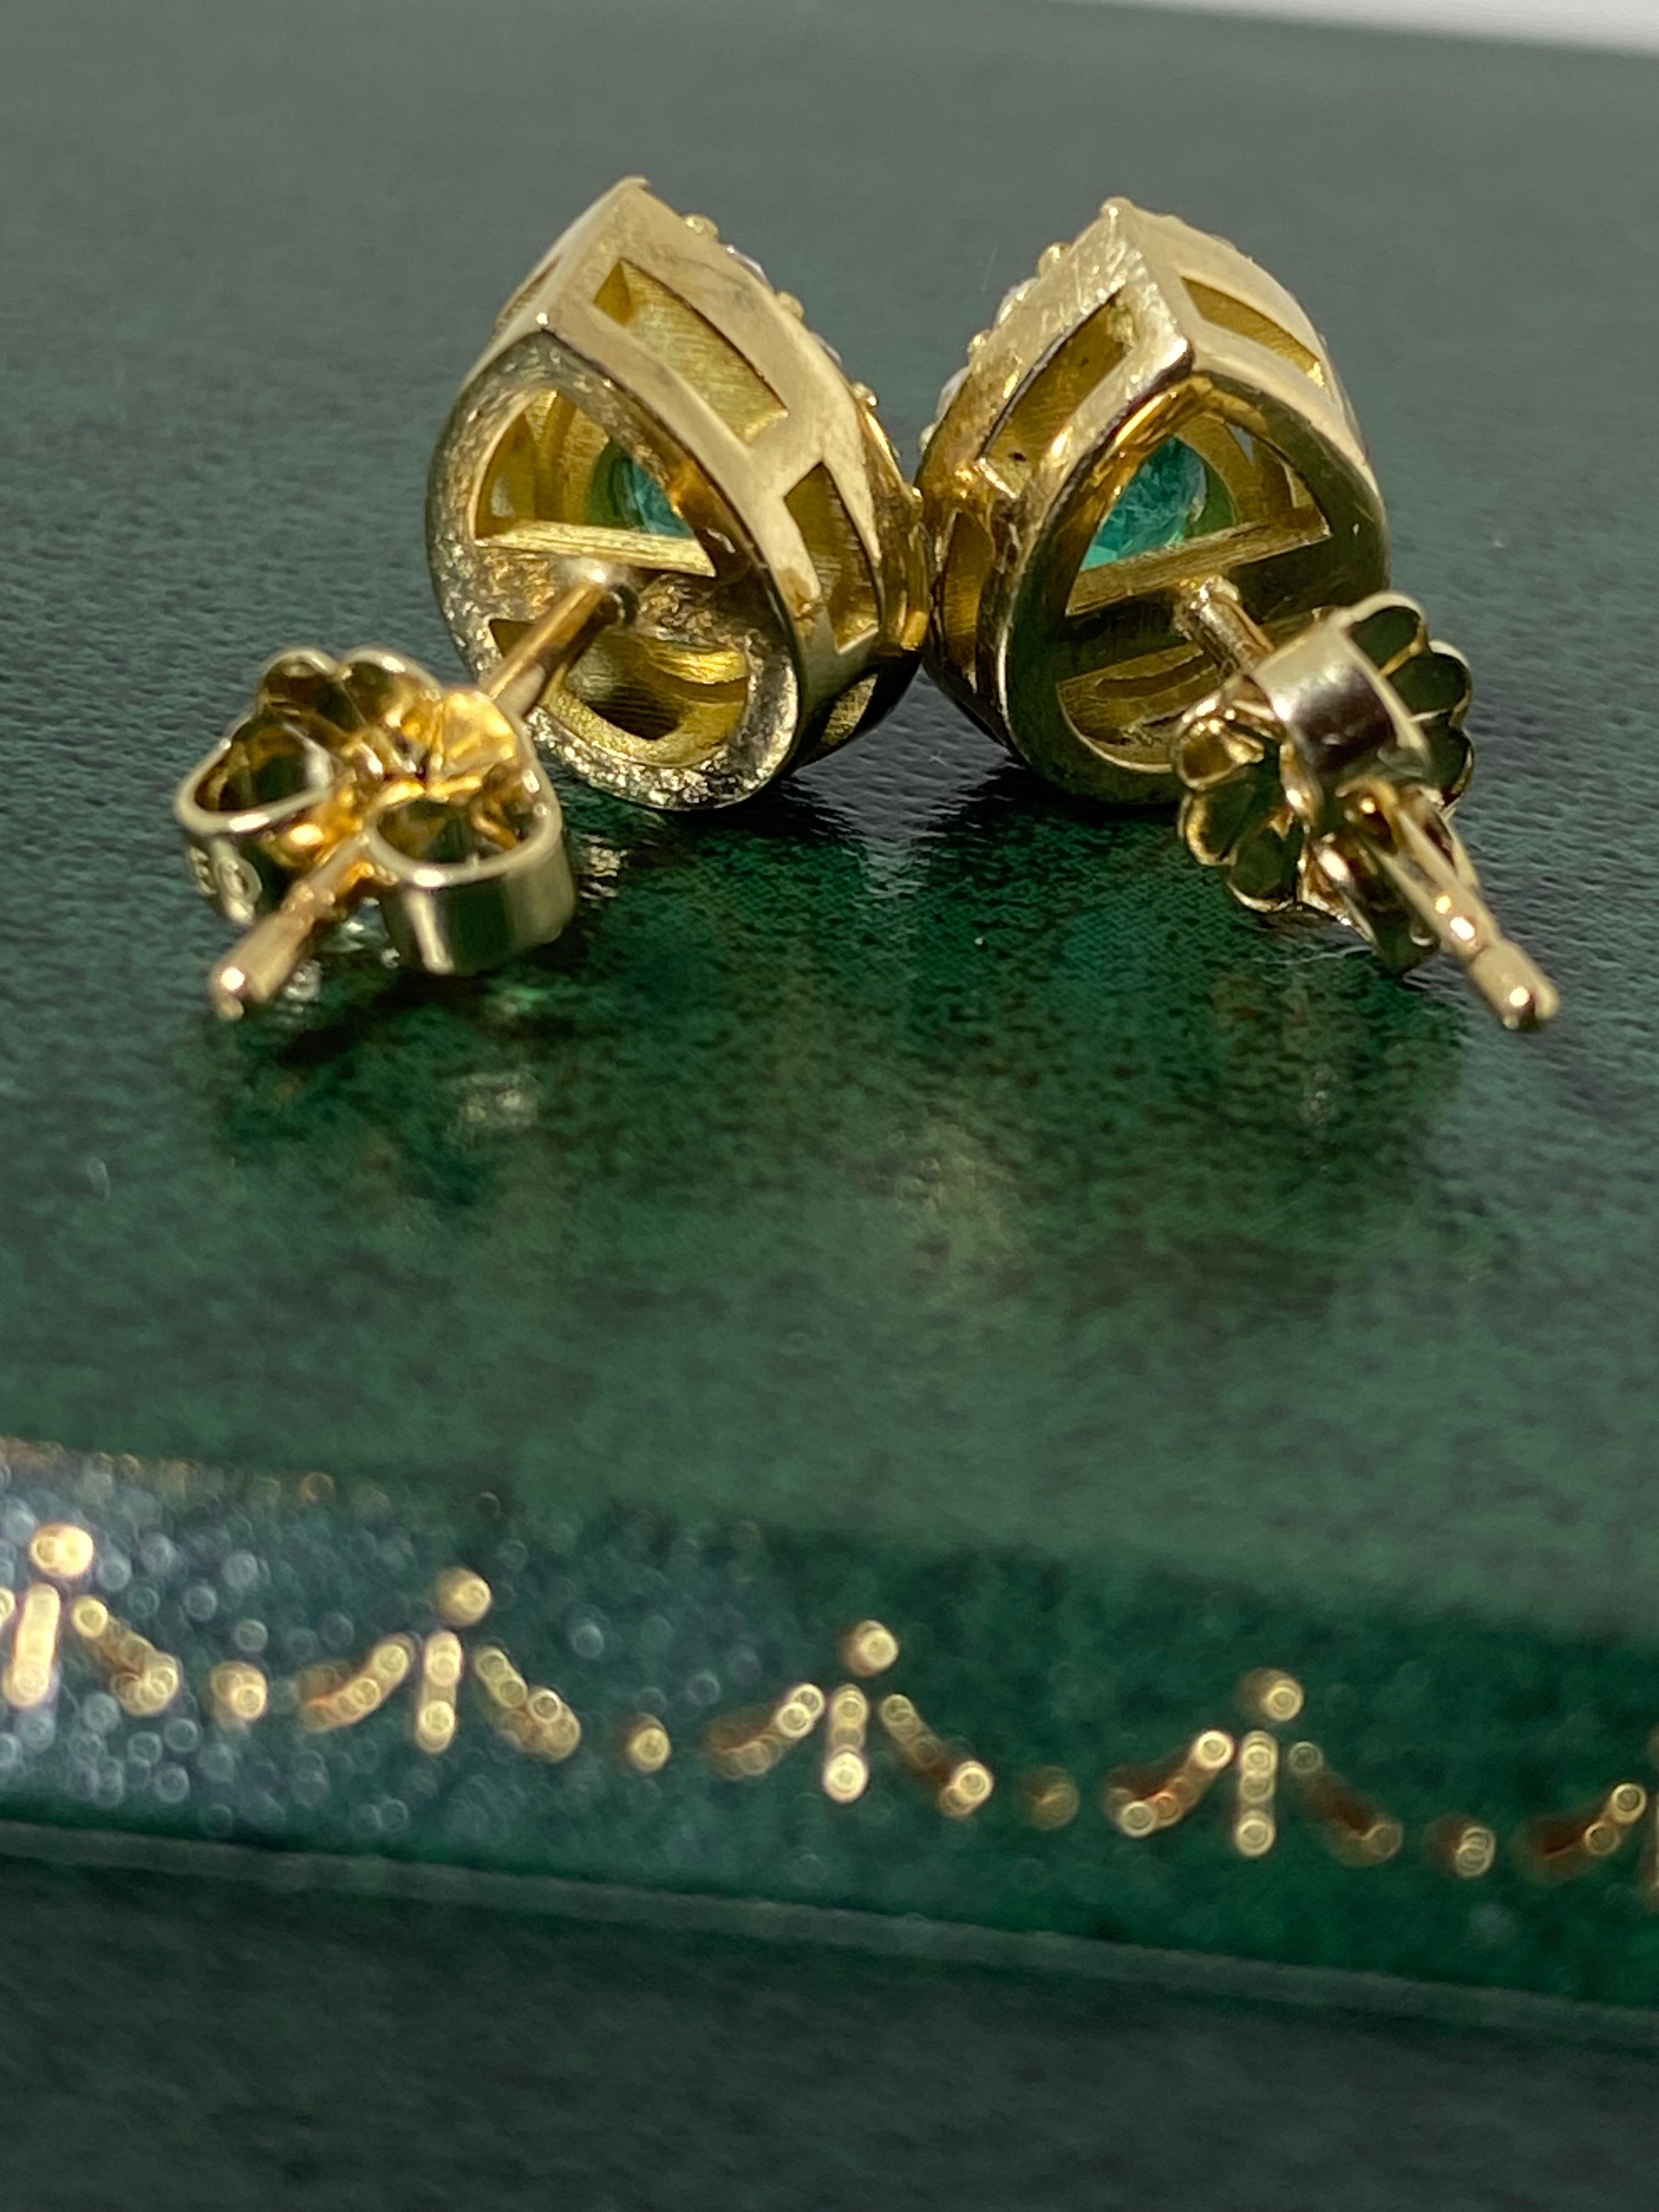 Dieses handgefertigte Paar Nieten weist folgende Merkmale auf 
die begehrtesten und beeindruckendsten Edelsteine aller Zeiten - 
Smaragde, die in der Vergangenheit 
soll ein Symbol für Leben, Harmonie und ewige Jugend sein
seit dem Altertum.